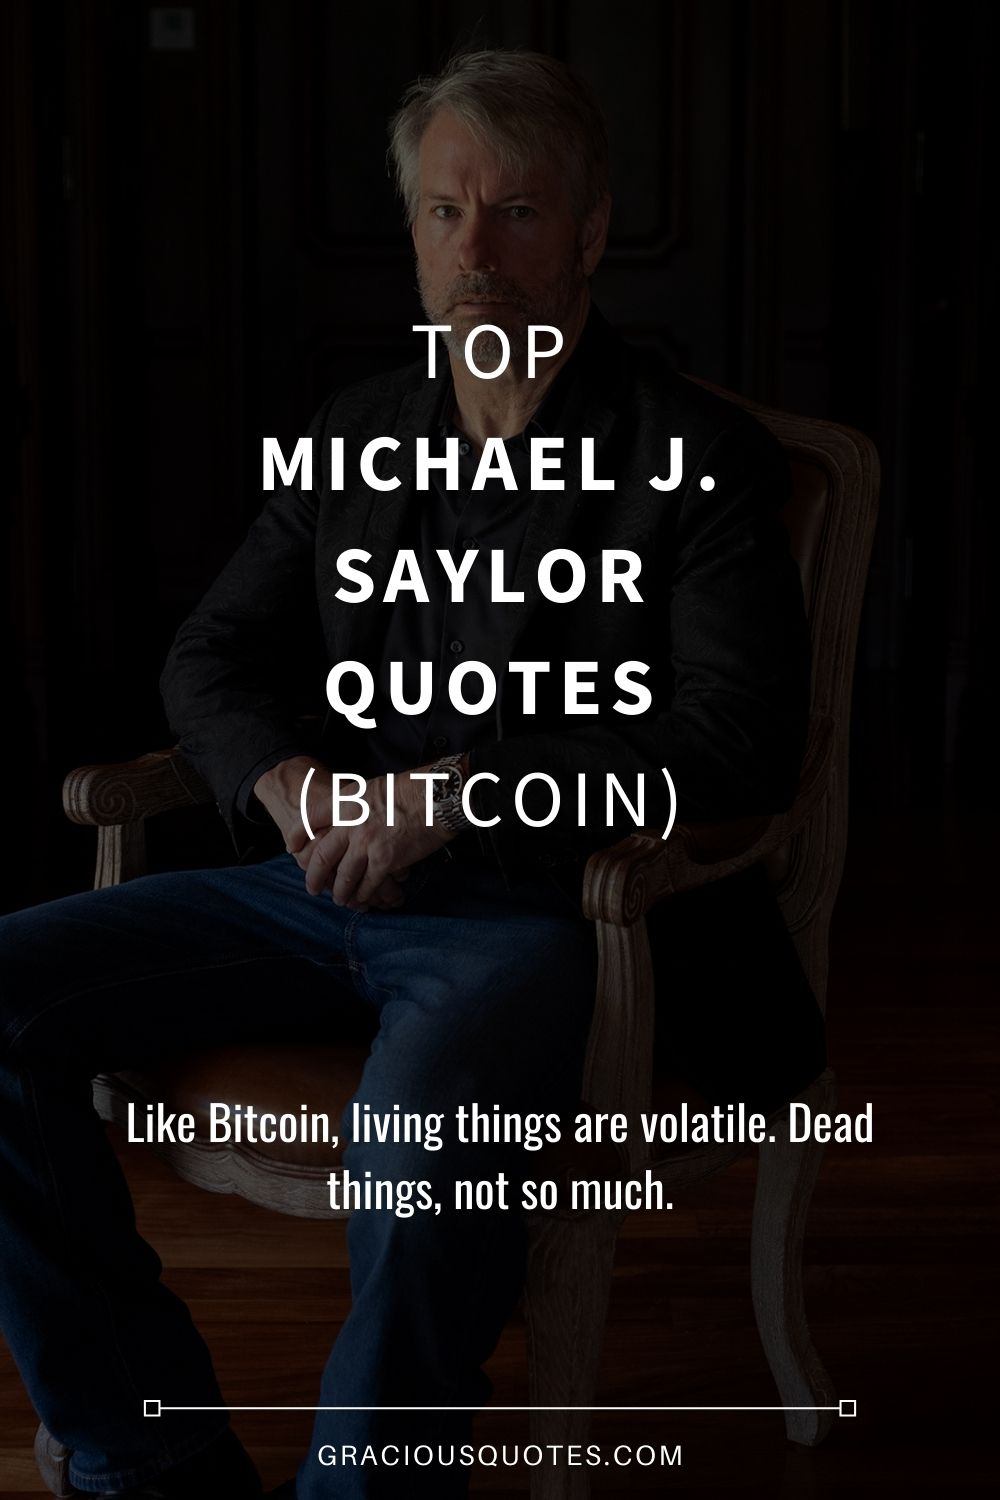 Top Michael J. Saylor Quotes (BITCOIN) - Gracious Quotes